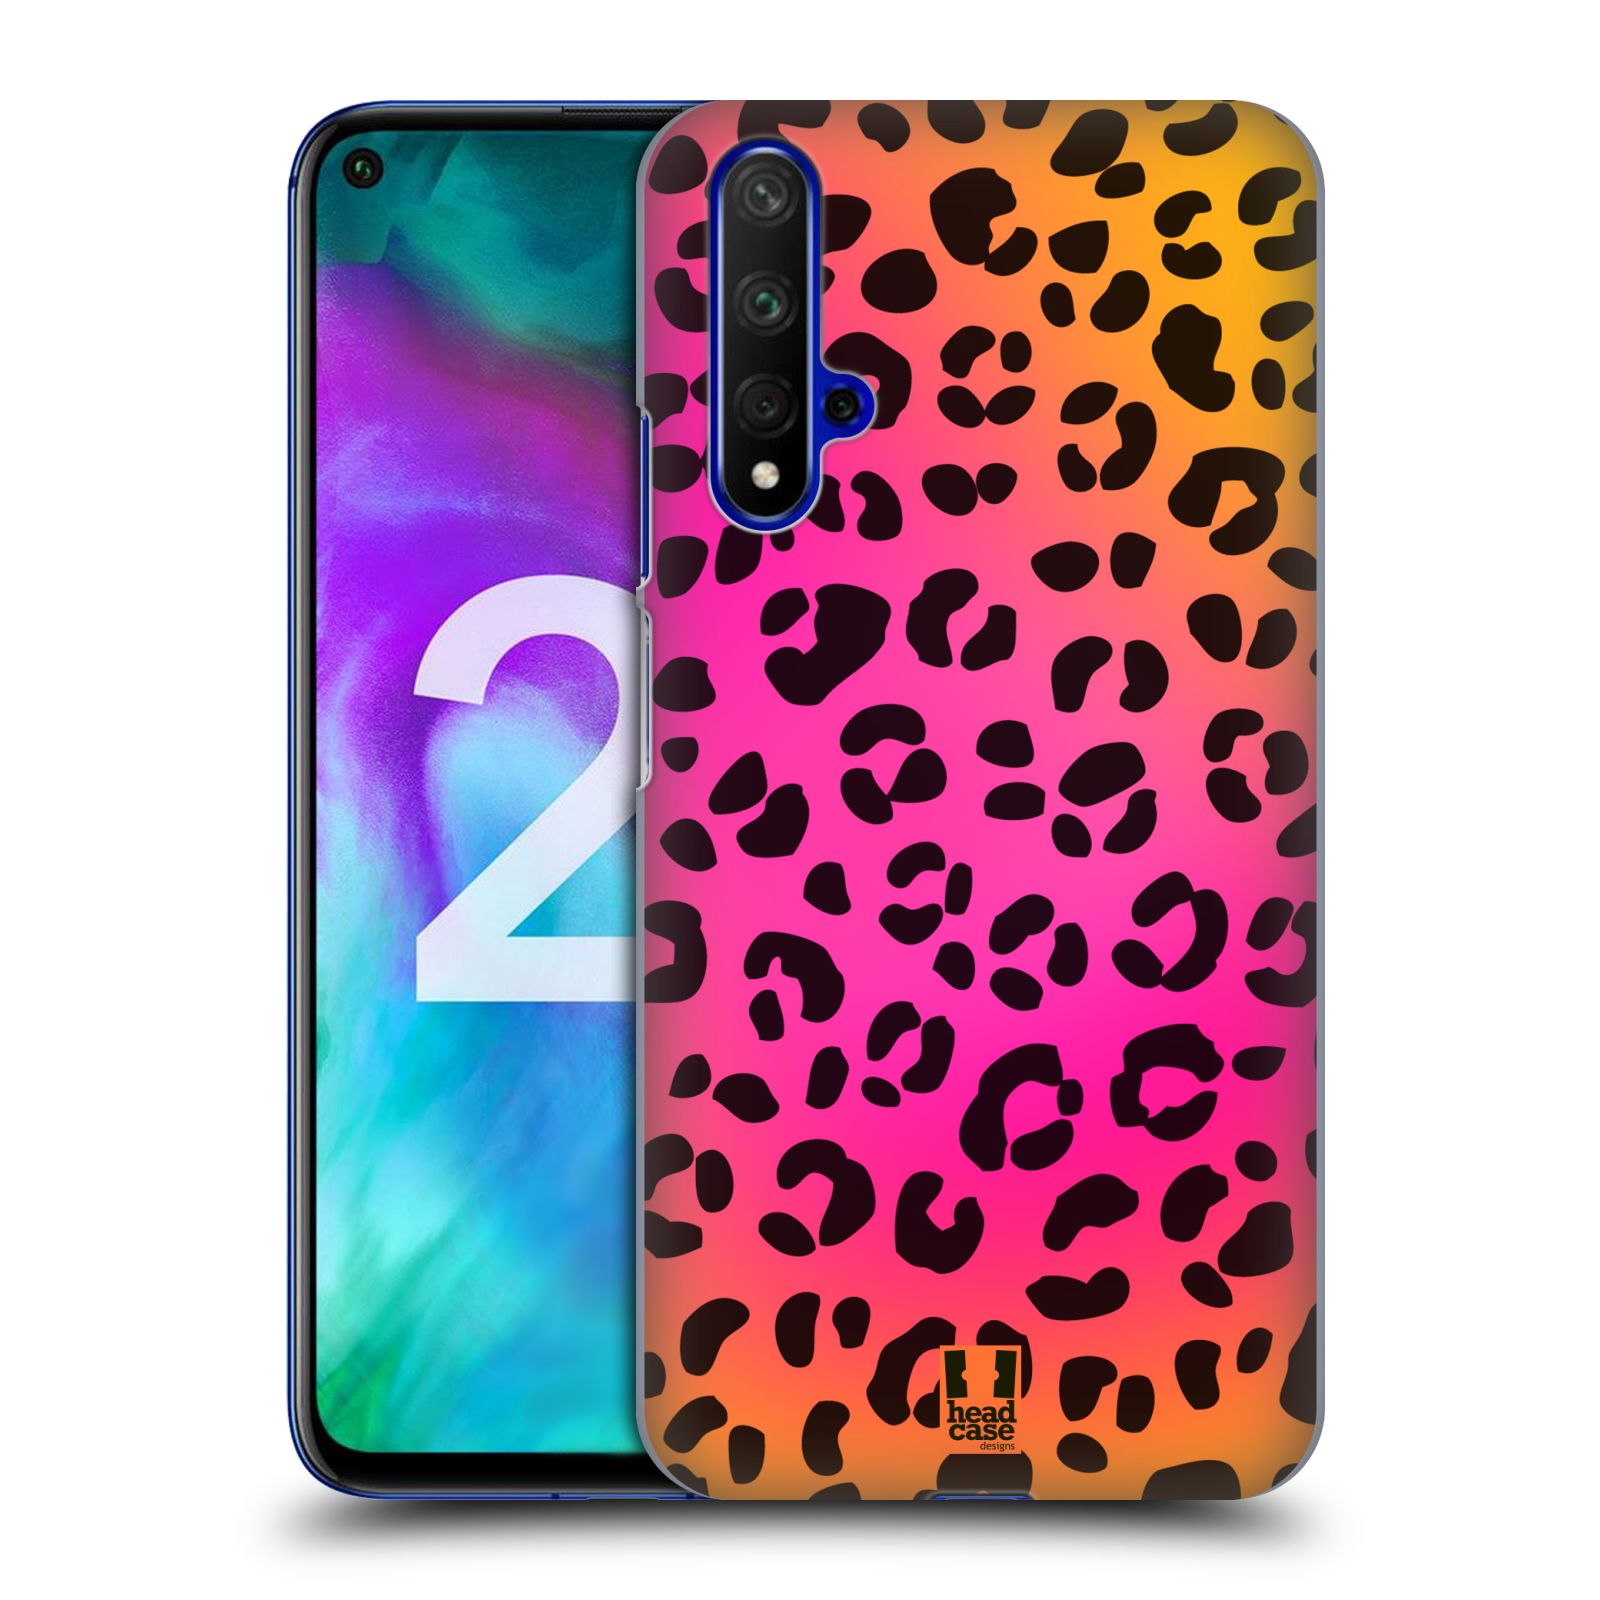 Pouzdro na mobil Honor 20 - HEAD CASE - vzor Divočina zvíře růžový leopard